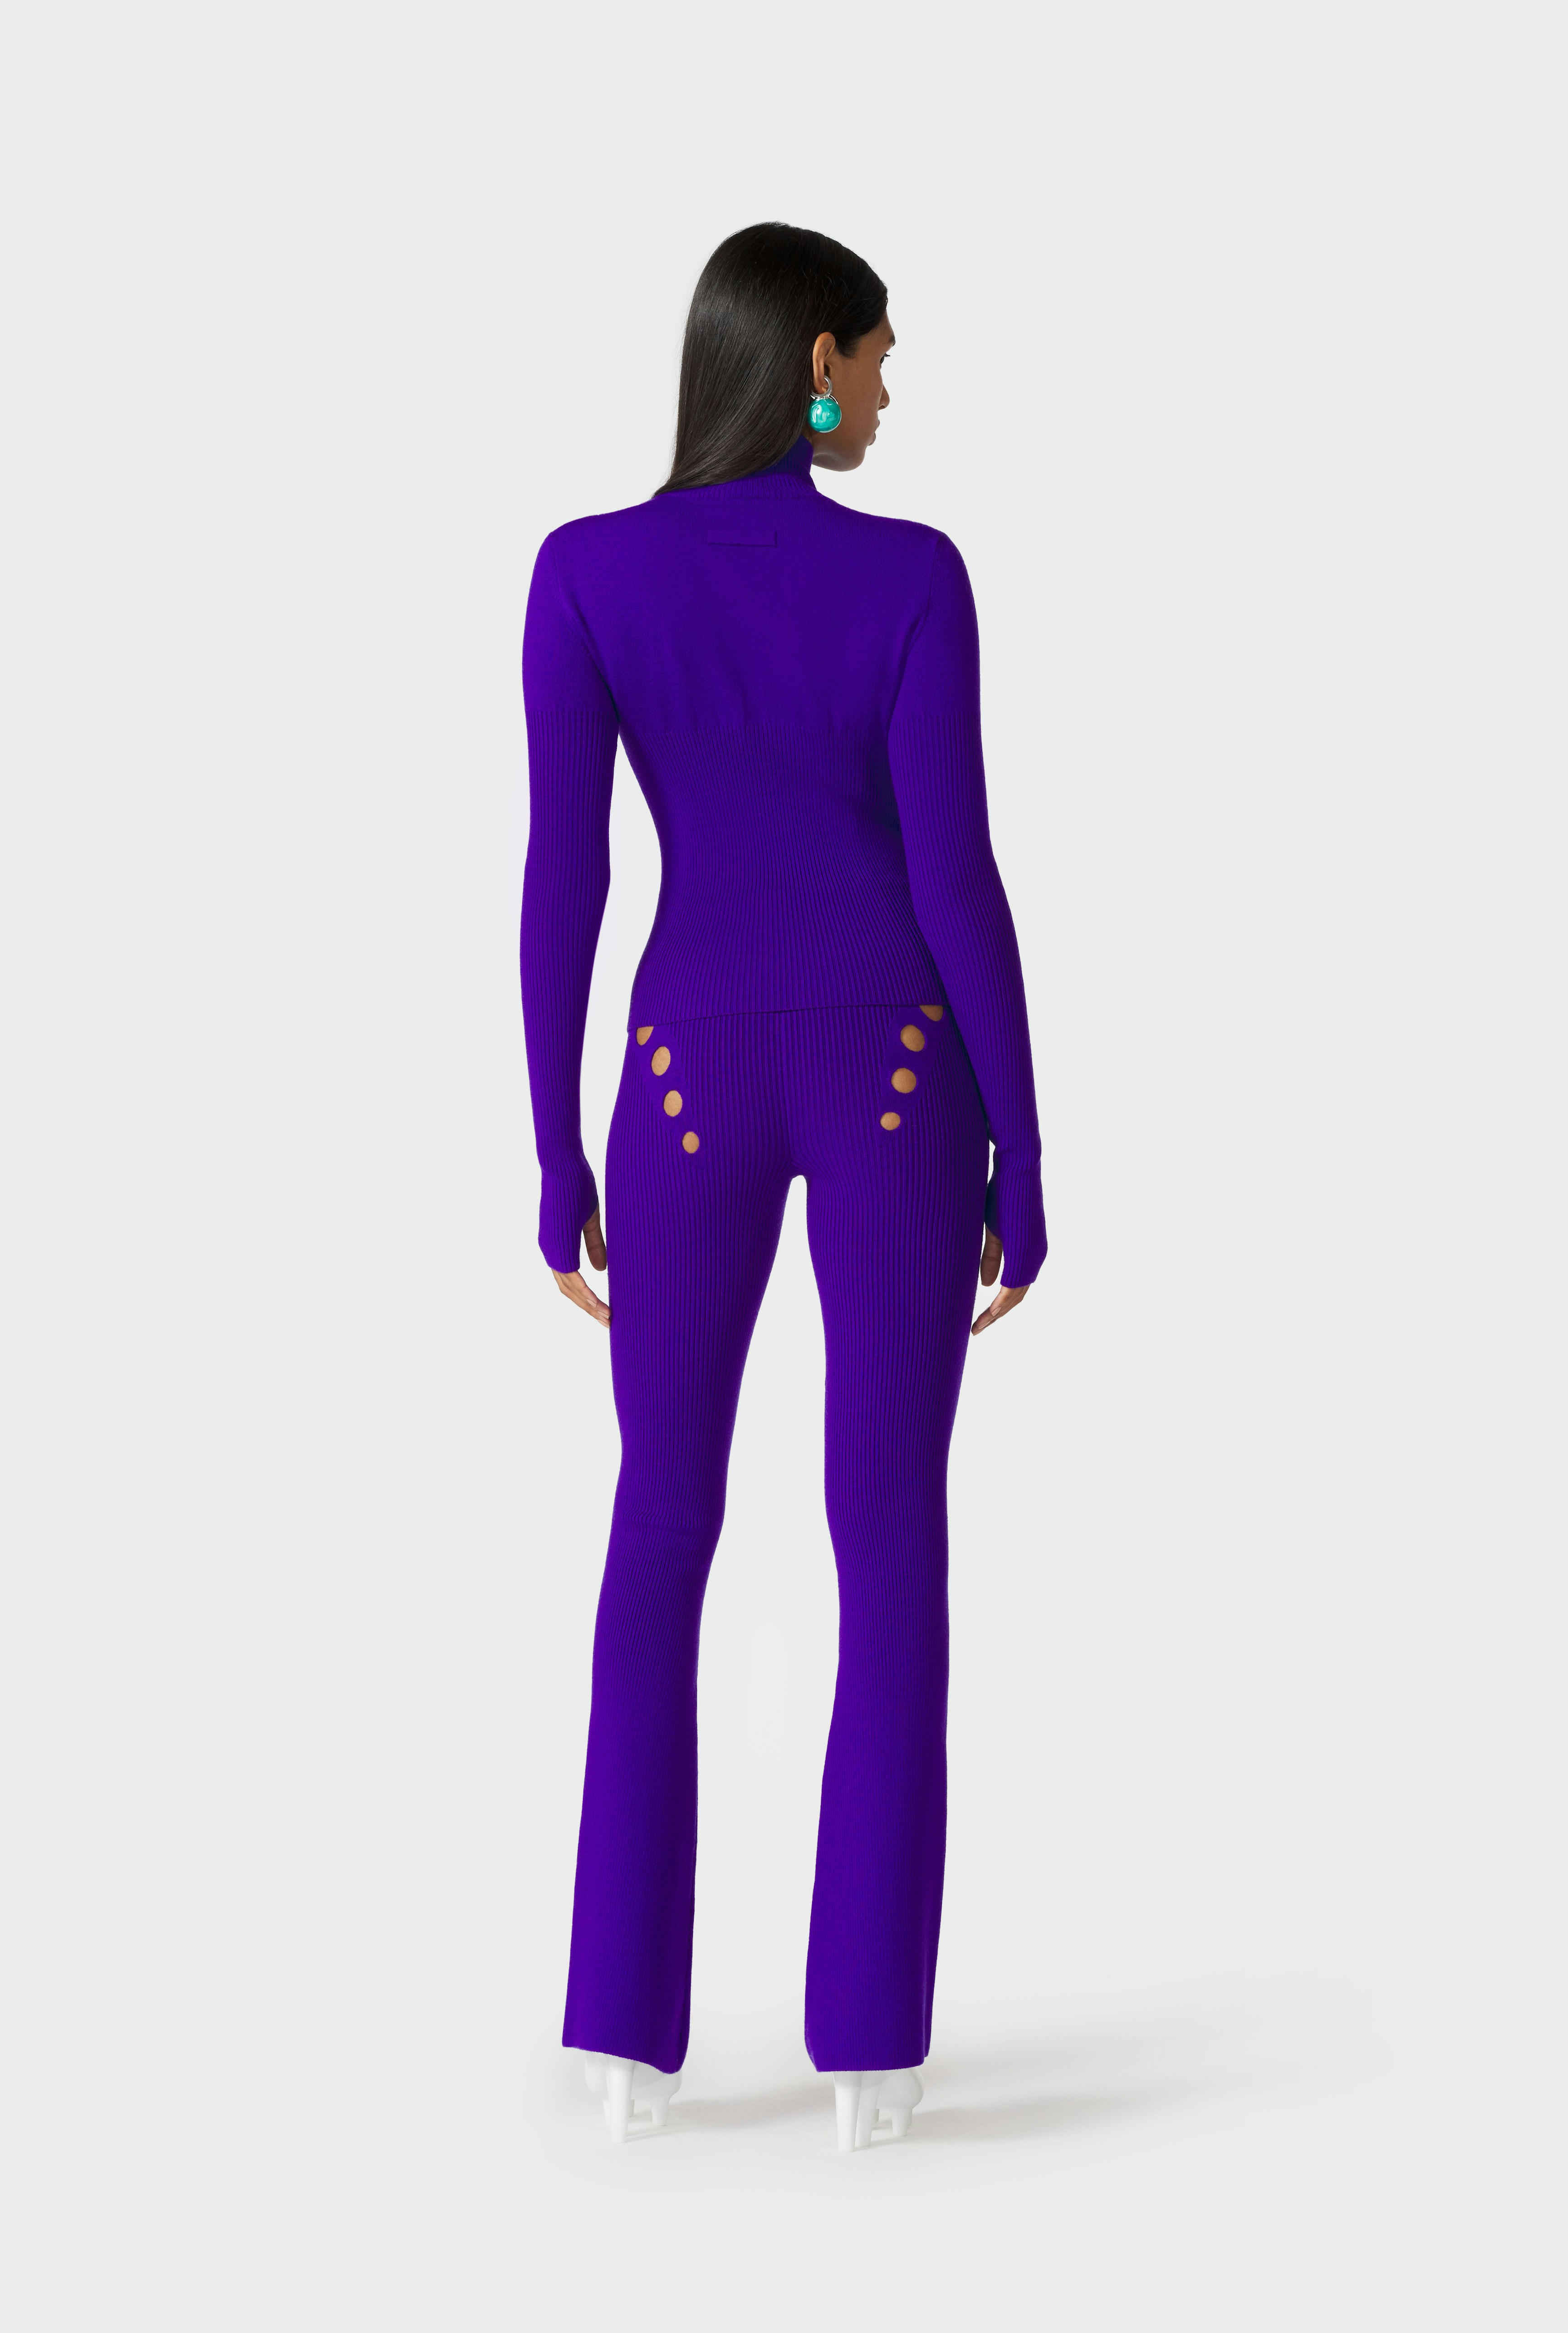 The Purple Openworked Knit Pants Jean Paul Gaultier